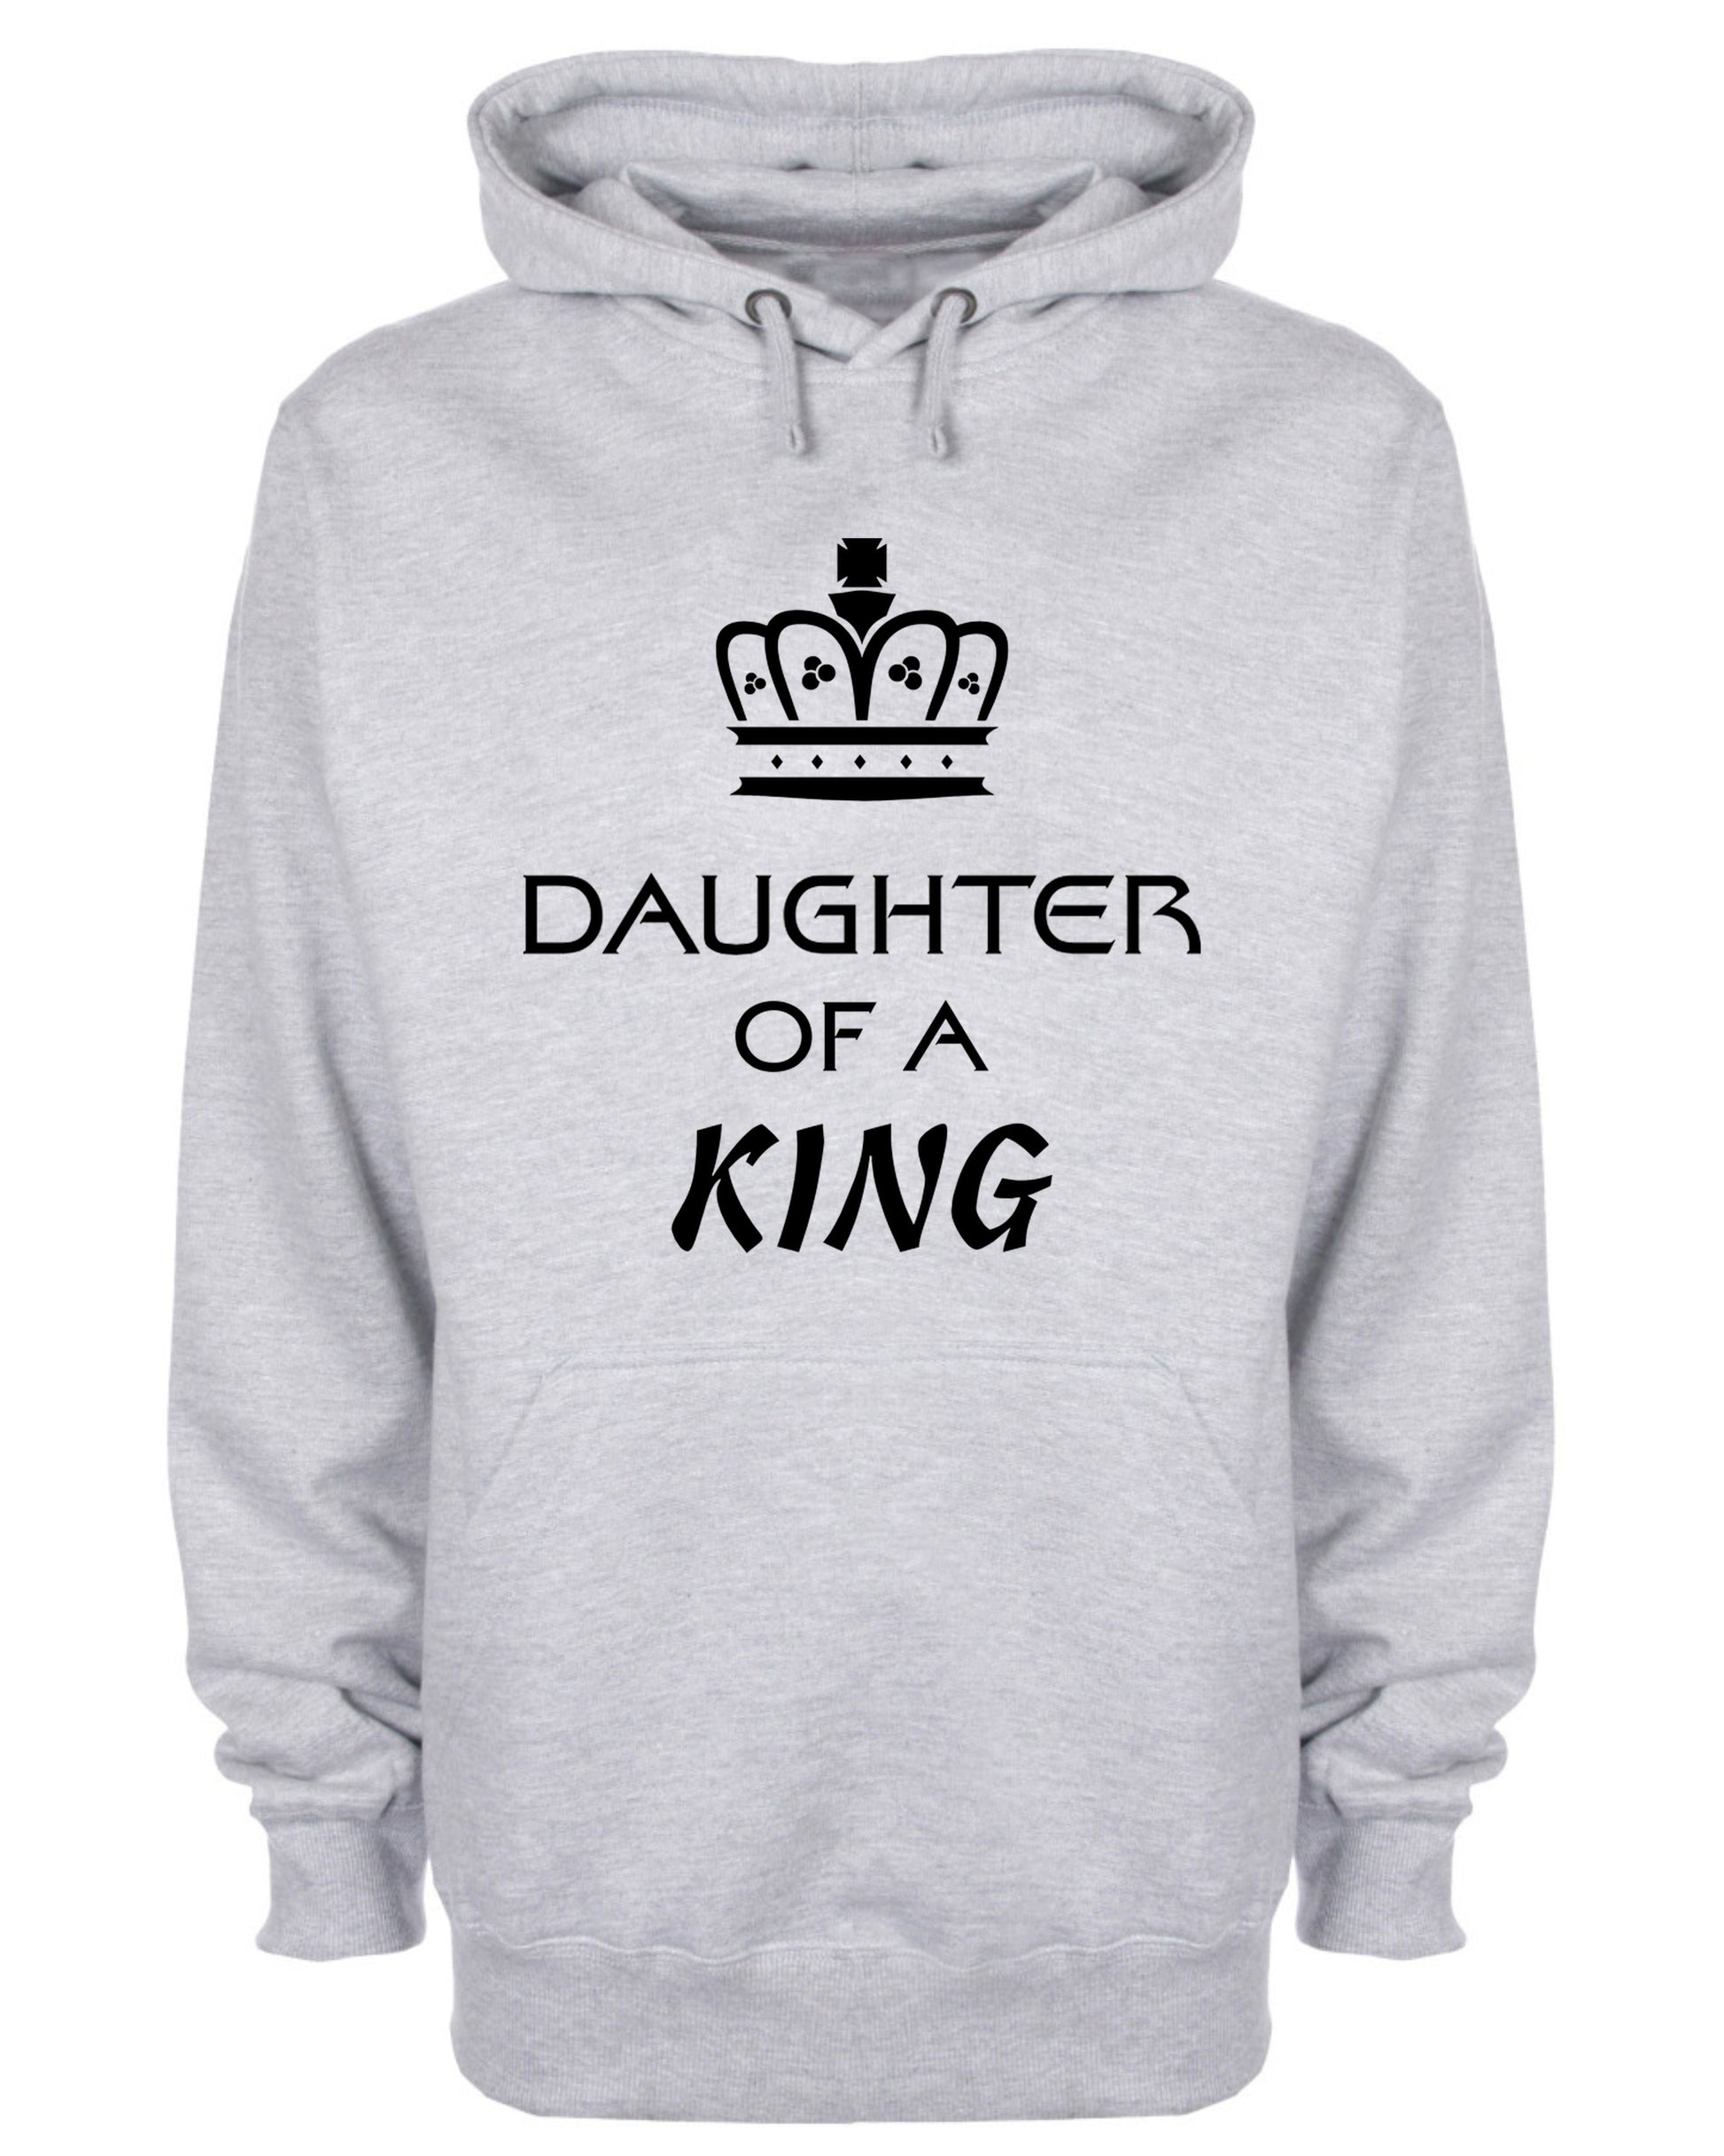 Daughter Of A King Hoodie Christian Sweatshirt